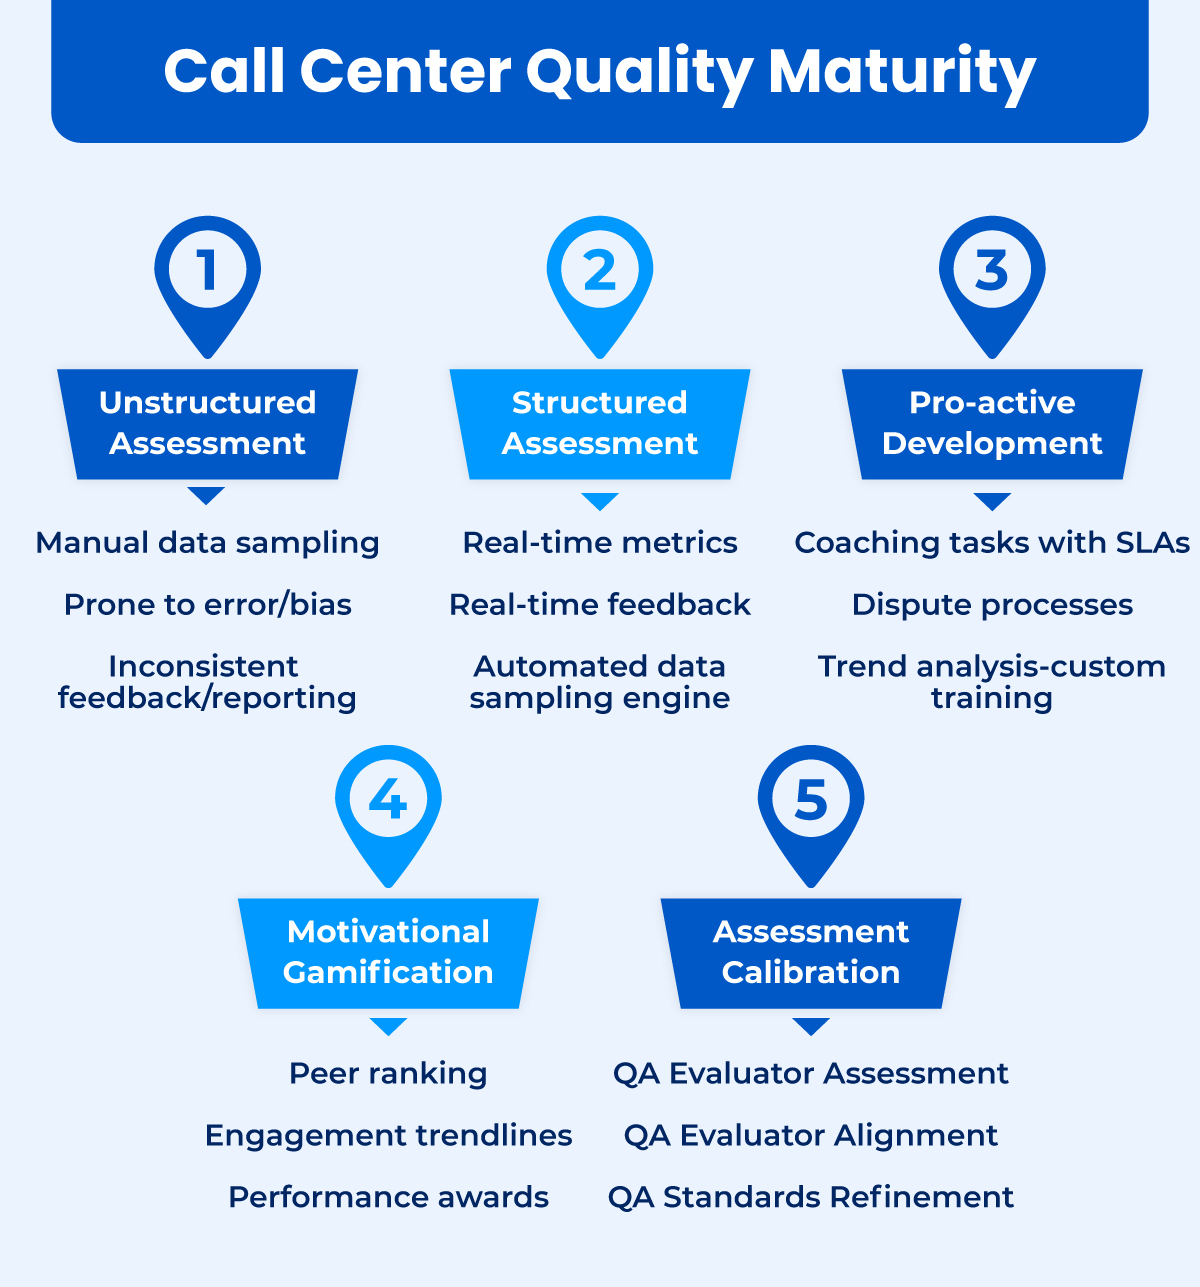 Call center quality maturity